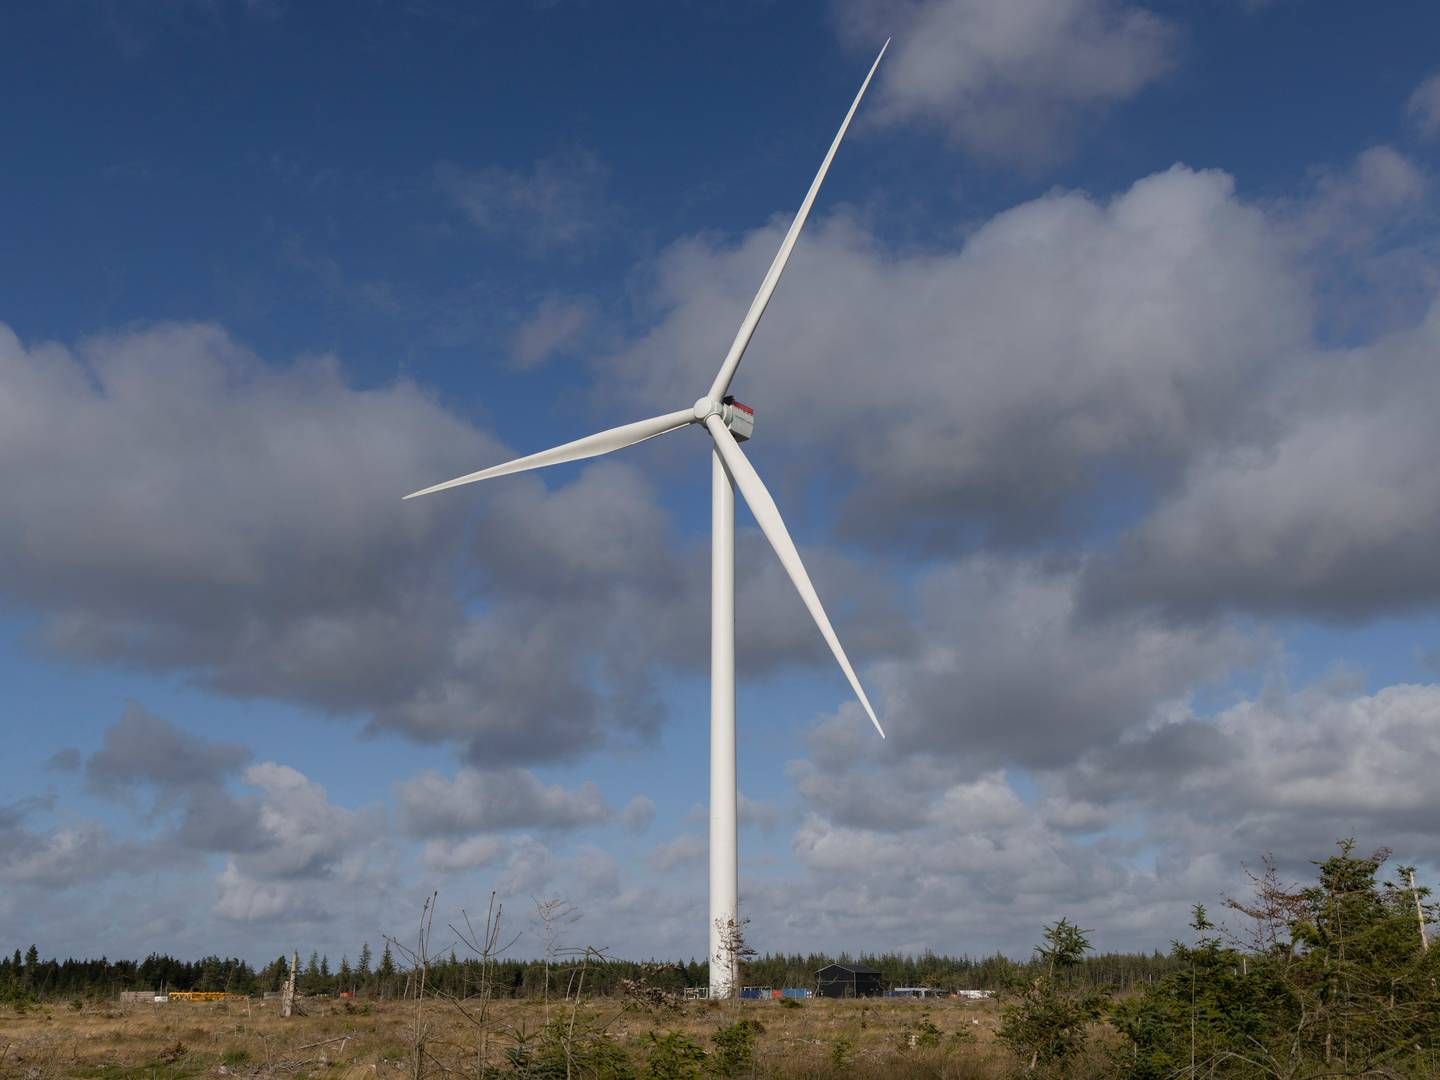 Det er ikke kun de store vindmøller, der kan give klimabesparelser. Digitale værktøjer kan også hjælpe til med den grønne omstilling. Arkivfoto. | Foto: Siemens Gamesa